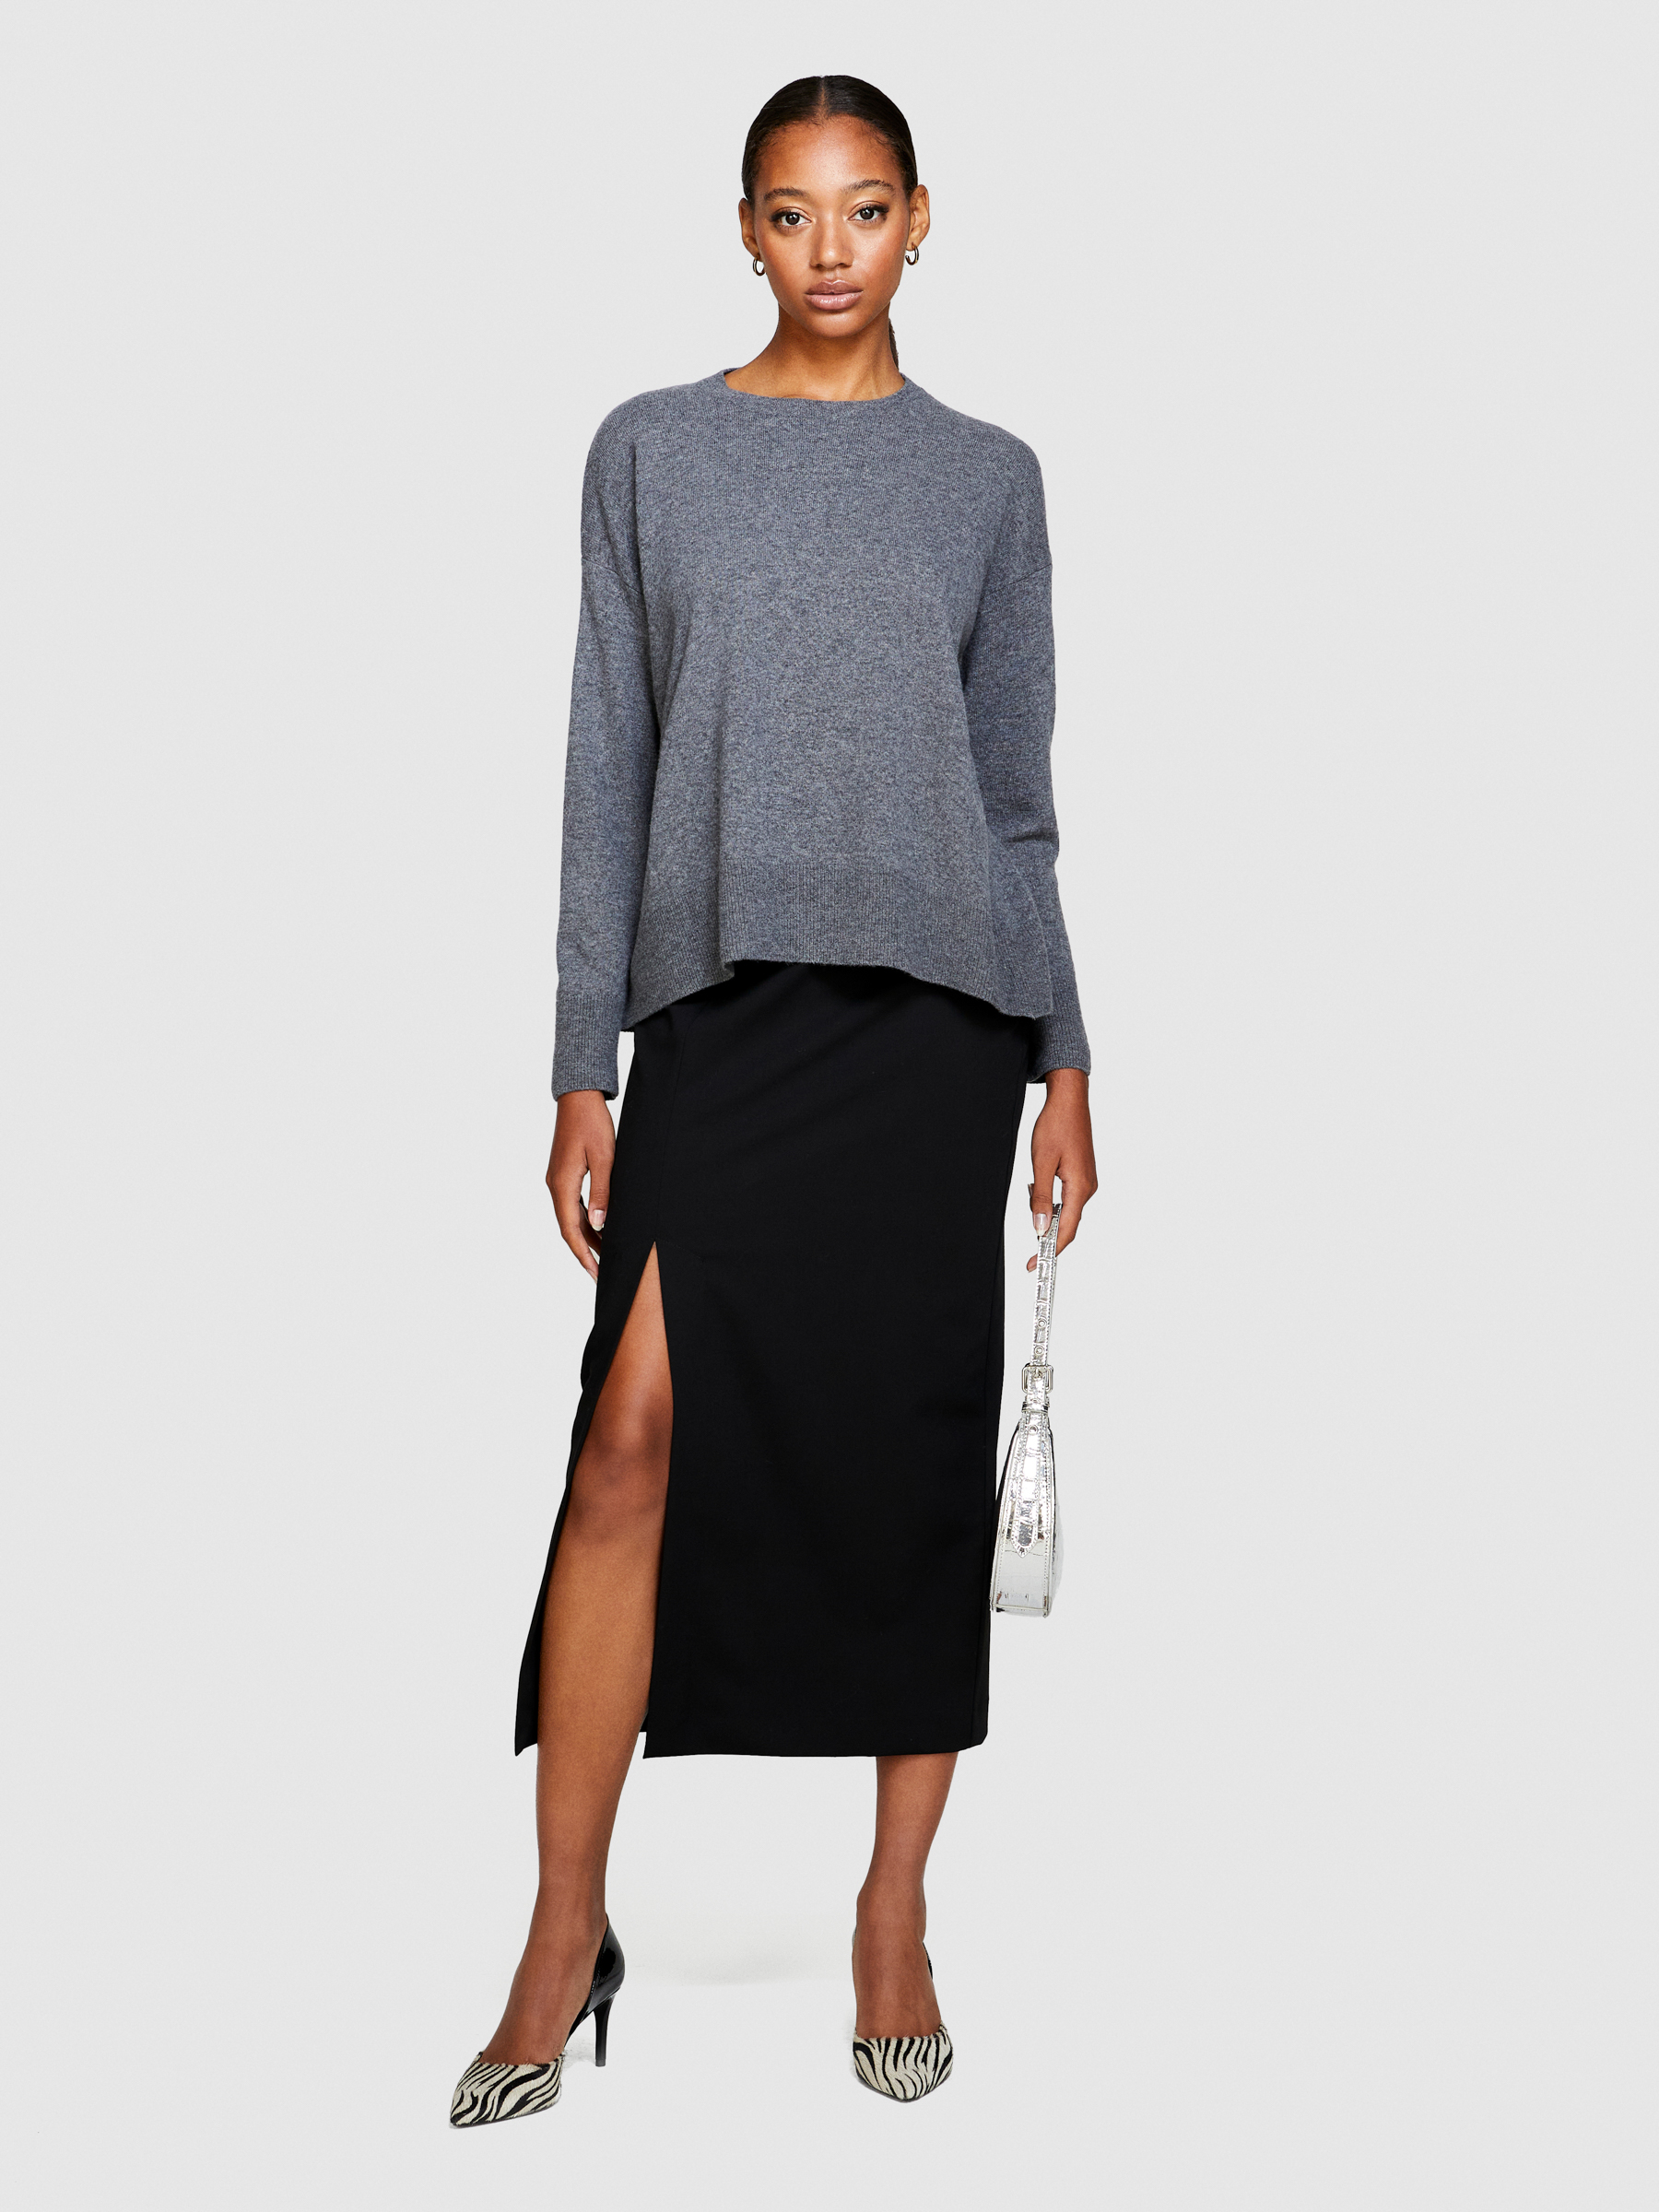 Sisley - Boxy Fit Sweater, Woman, Gray, Size: S